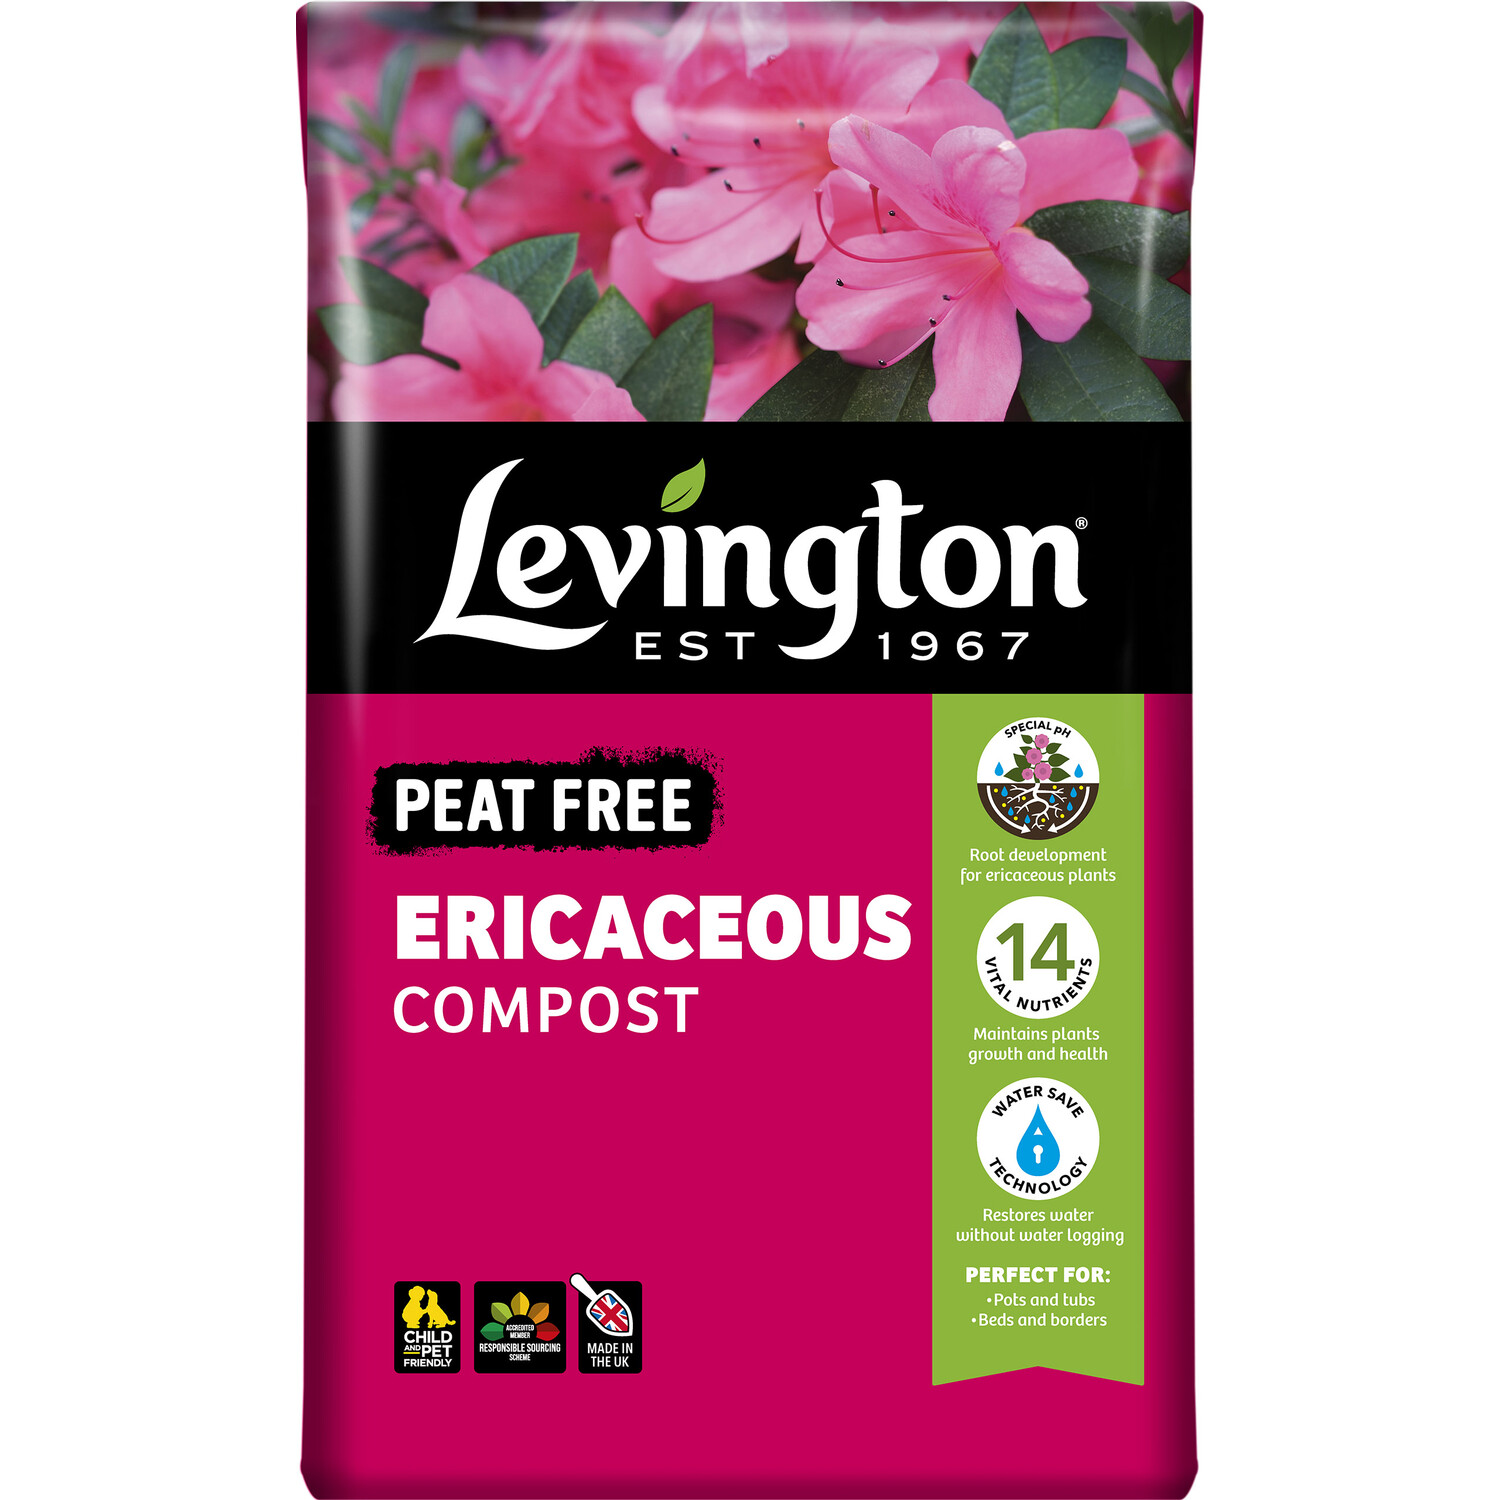 Levington Peat Free Ericaceous Compost Image